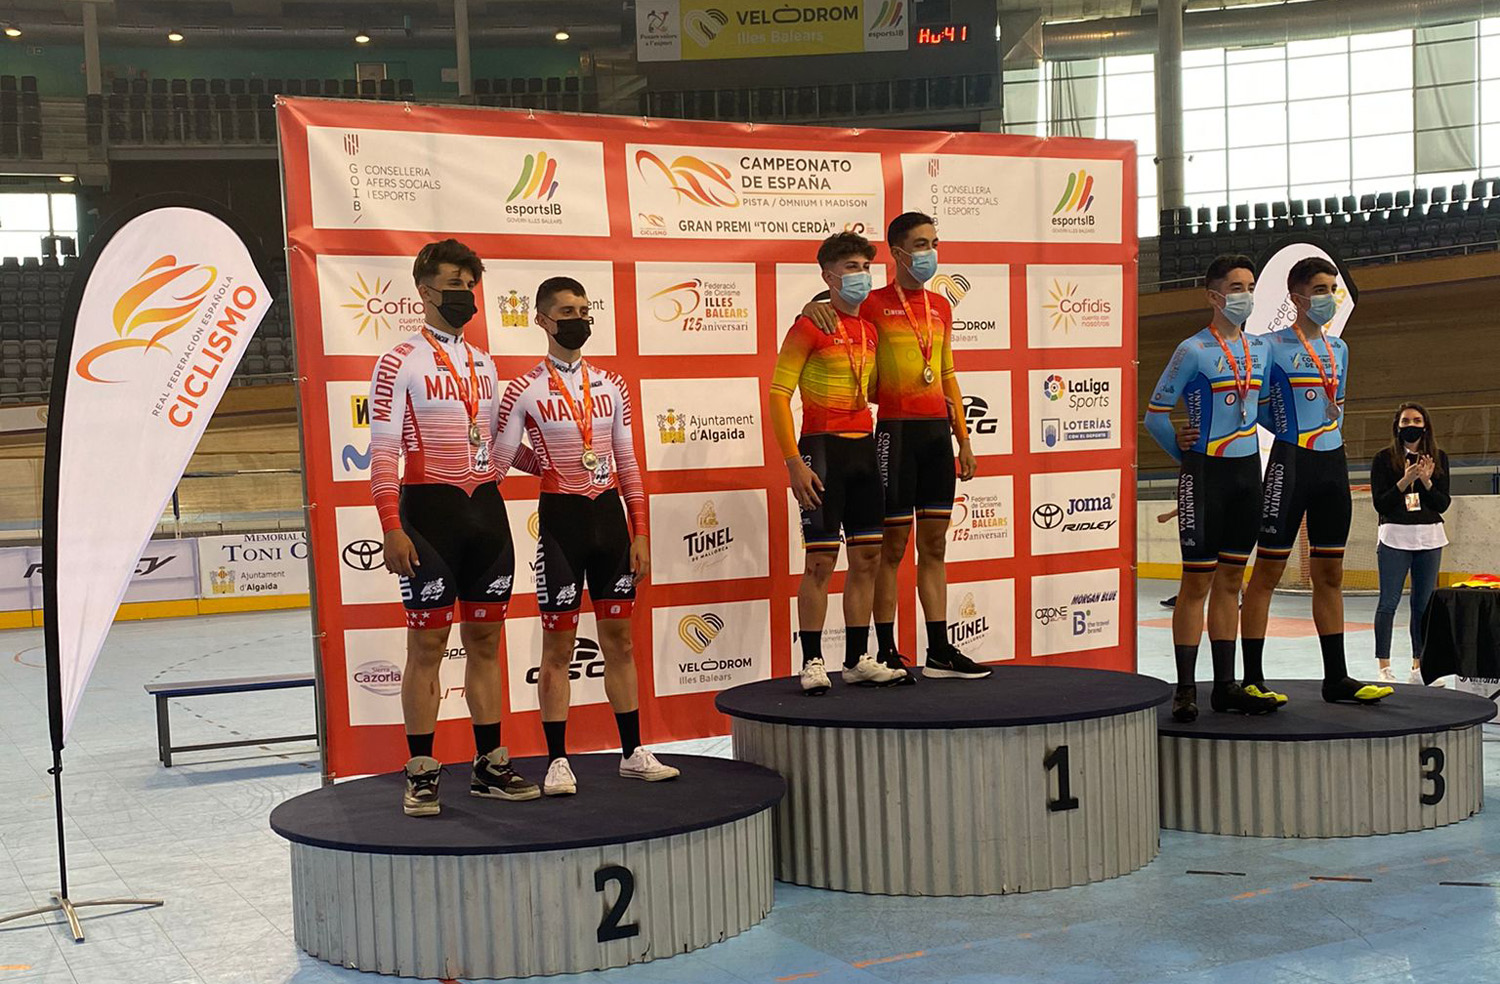 Cuatro medallas y dos títulos nacionales, excelente cosecha madrileña en los Campeonatos de España de ómnium y madison